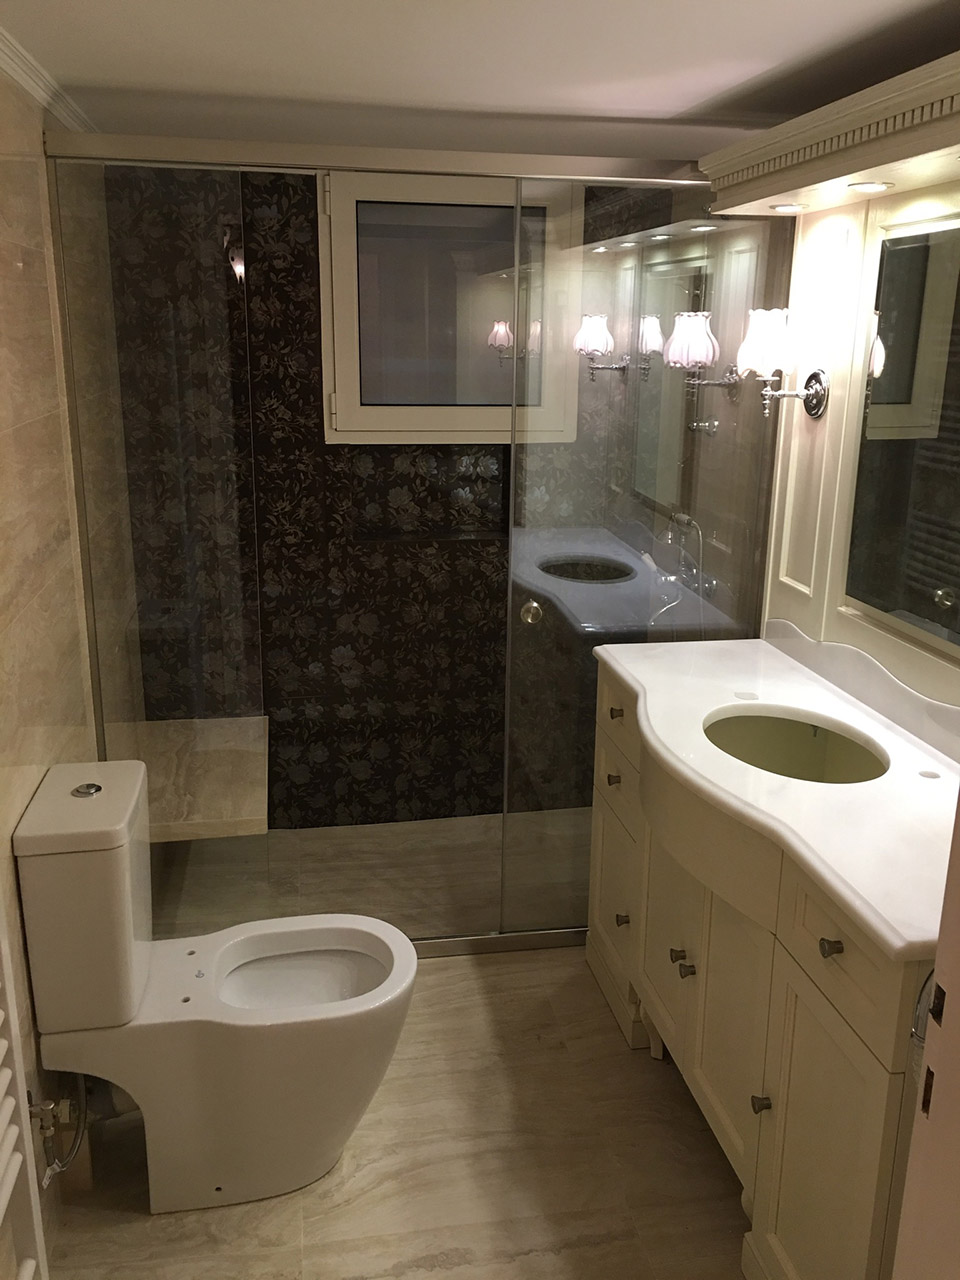 Ανακαίνιση μπάνιου σε οικία στο Μαρούσι πριν και μετά